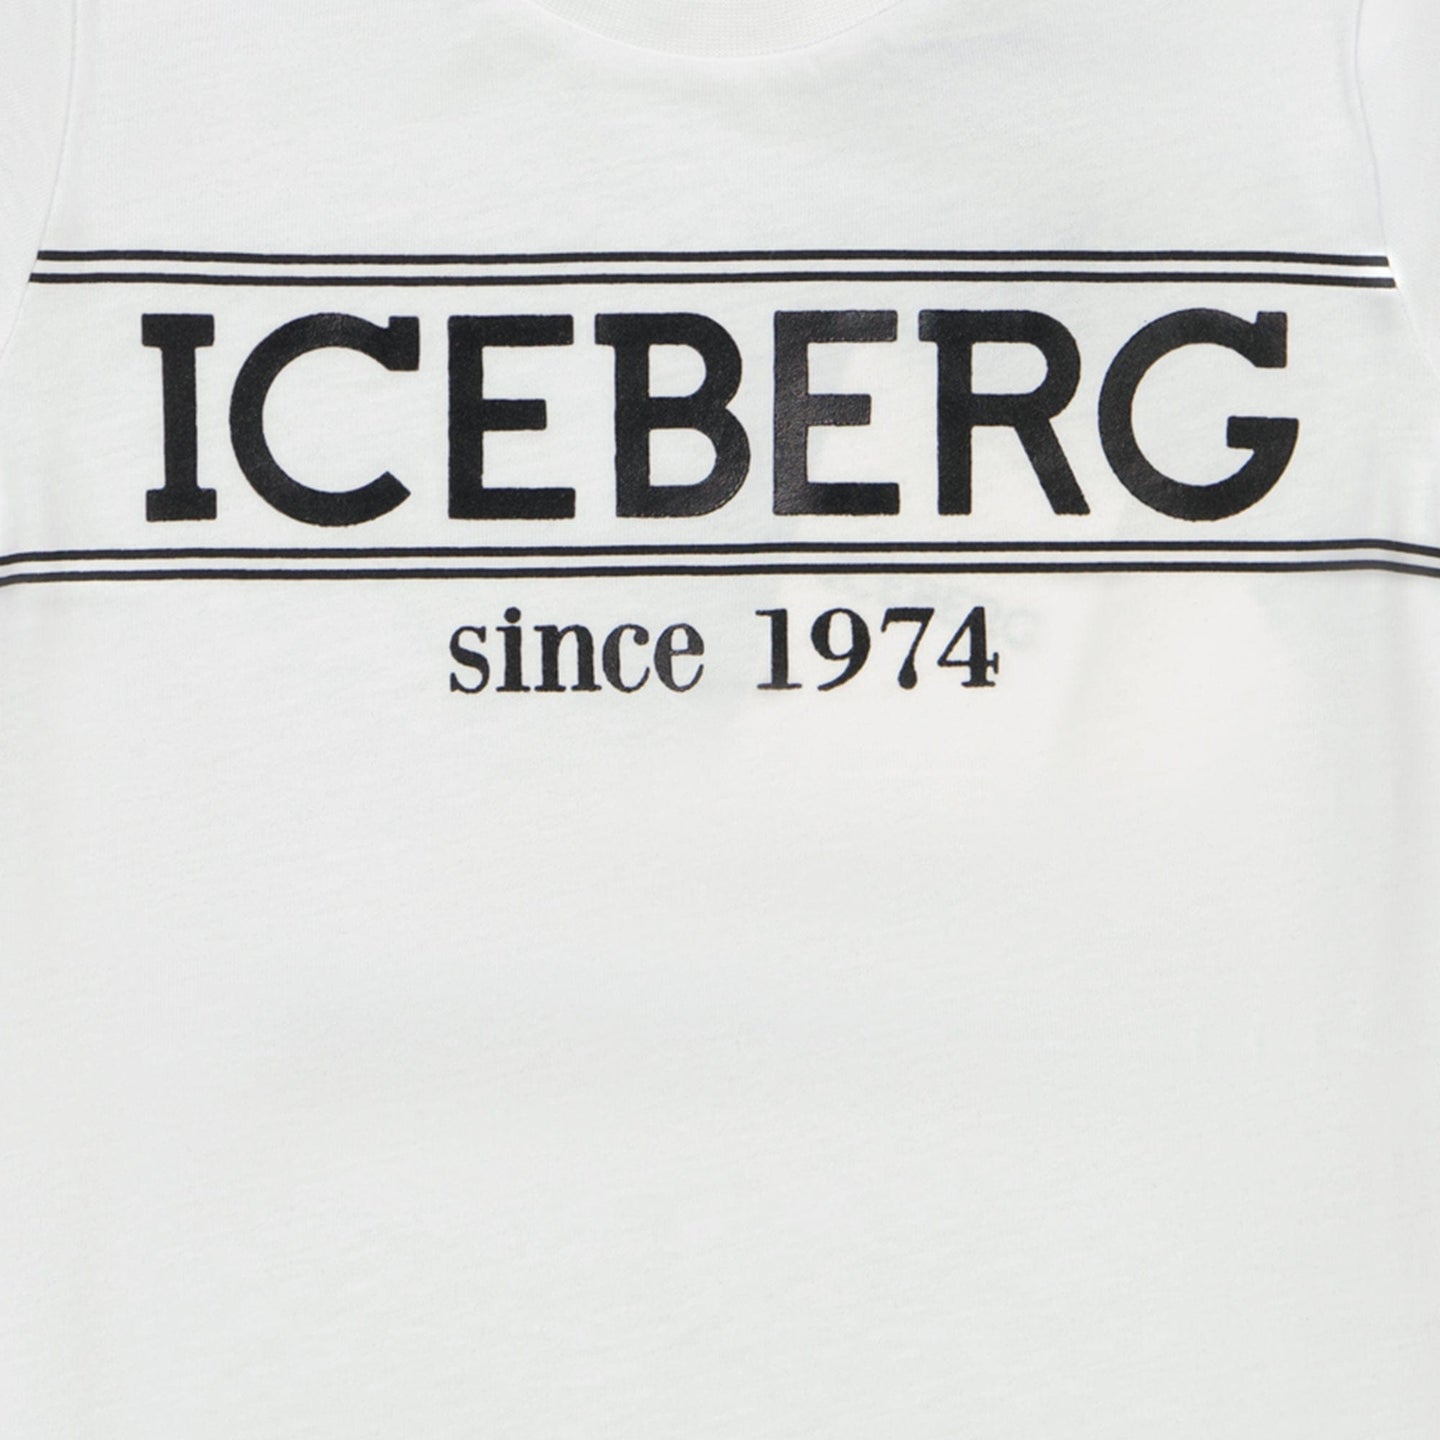 Iceberg Baby Jongens T-shirt Wit 6 mnd